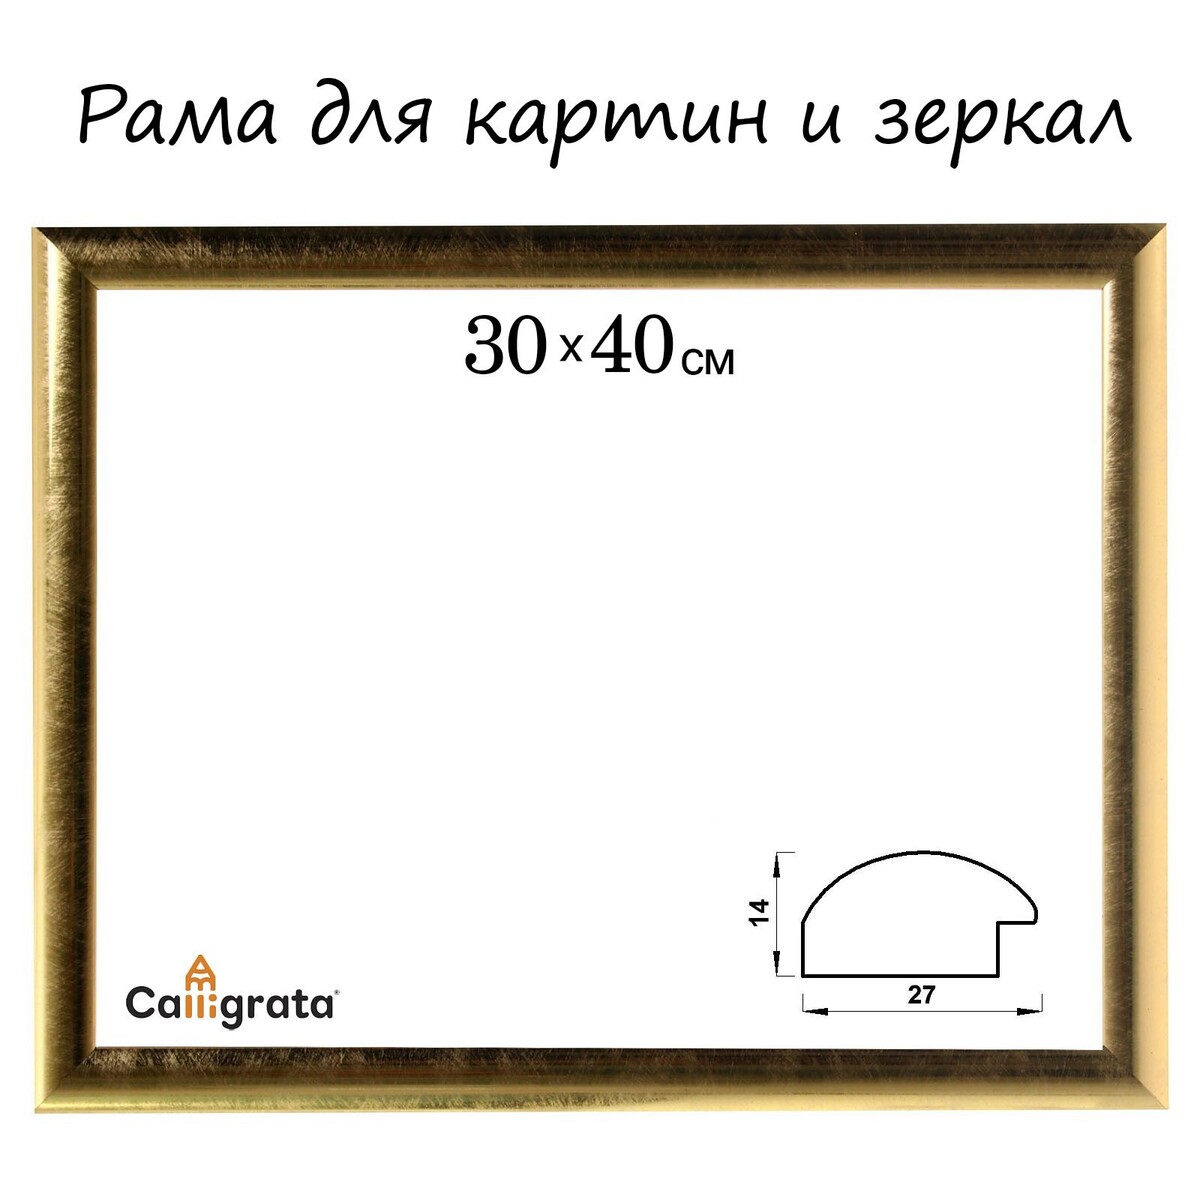 Рама для картин (зеркал) 30 х 40 х 2,7 см, пластиковая, calligrata 6472, золотая